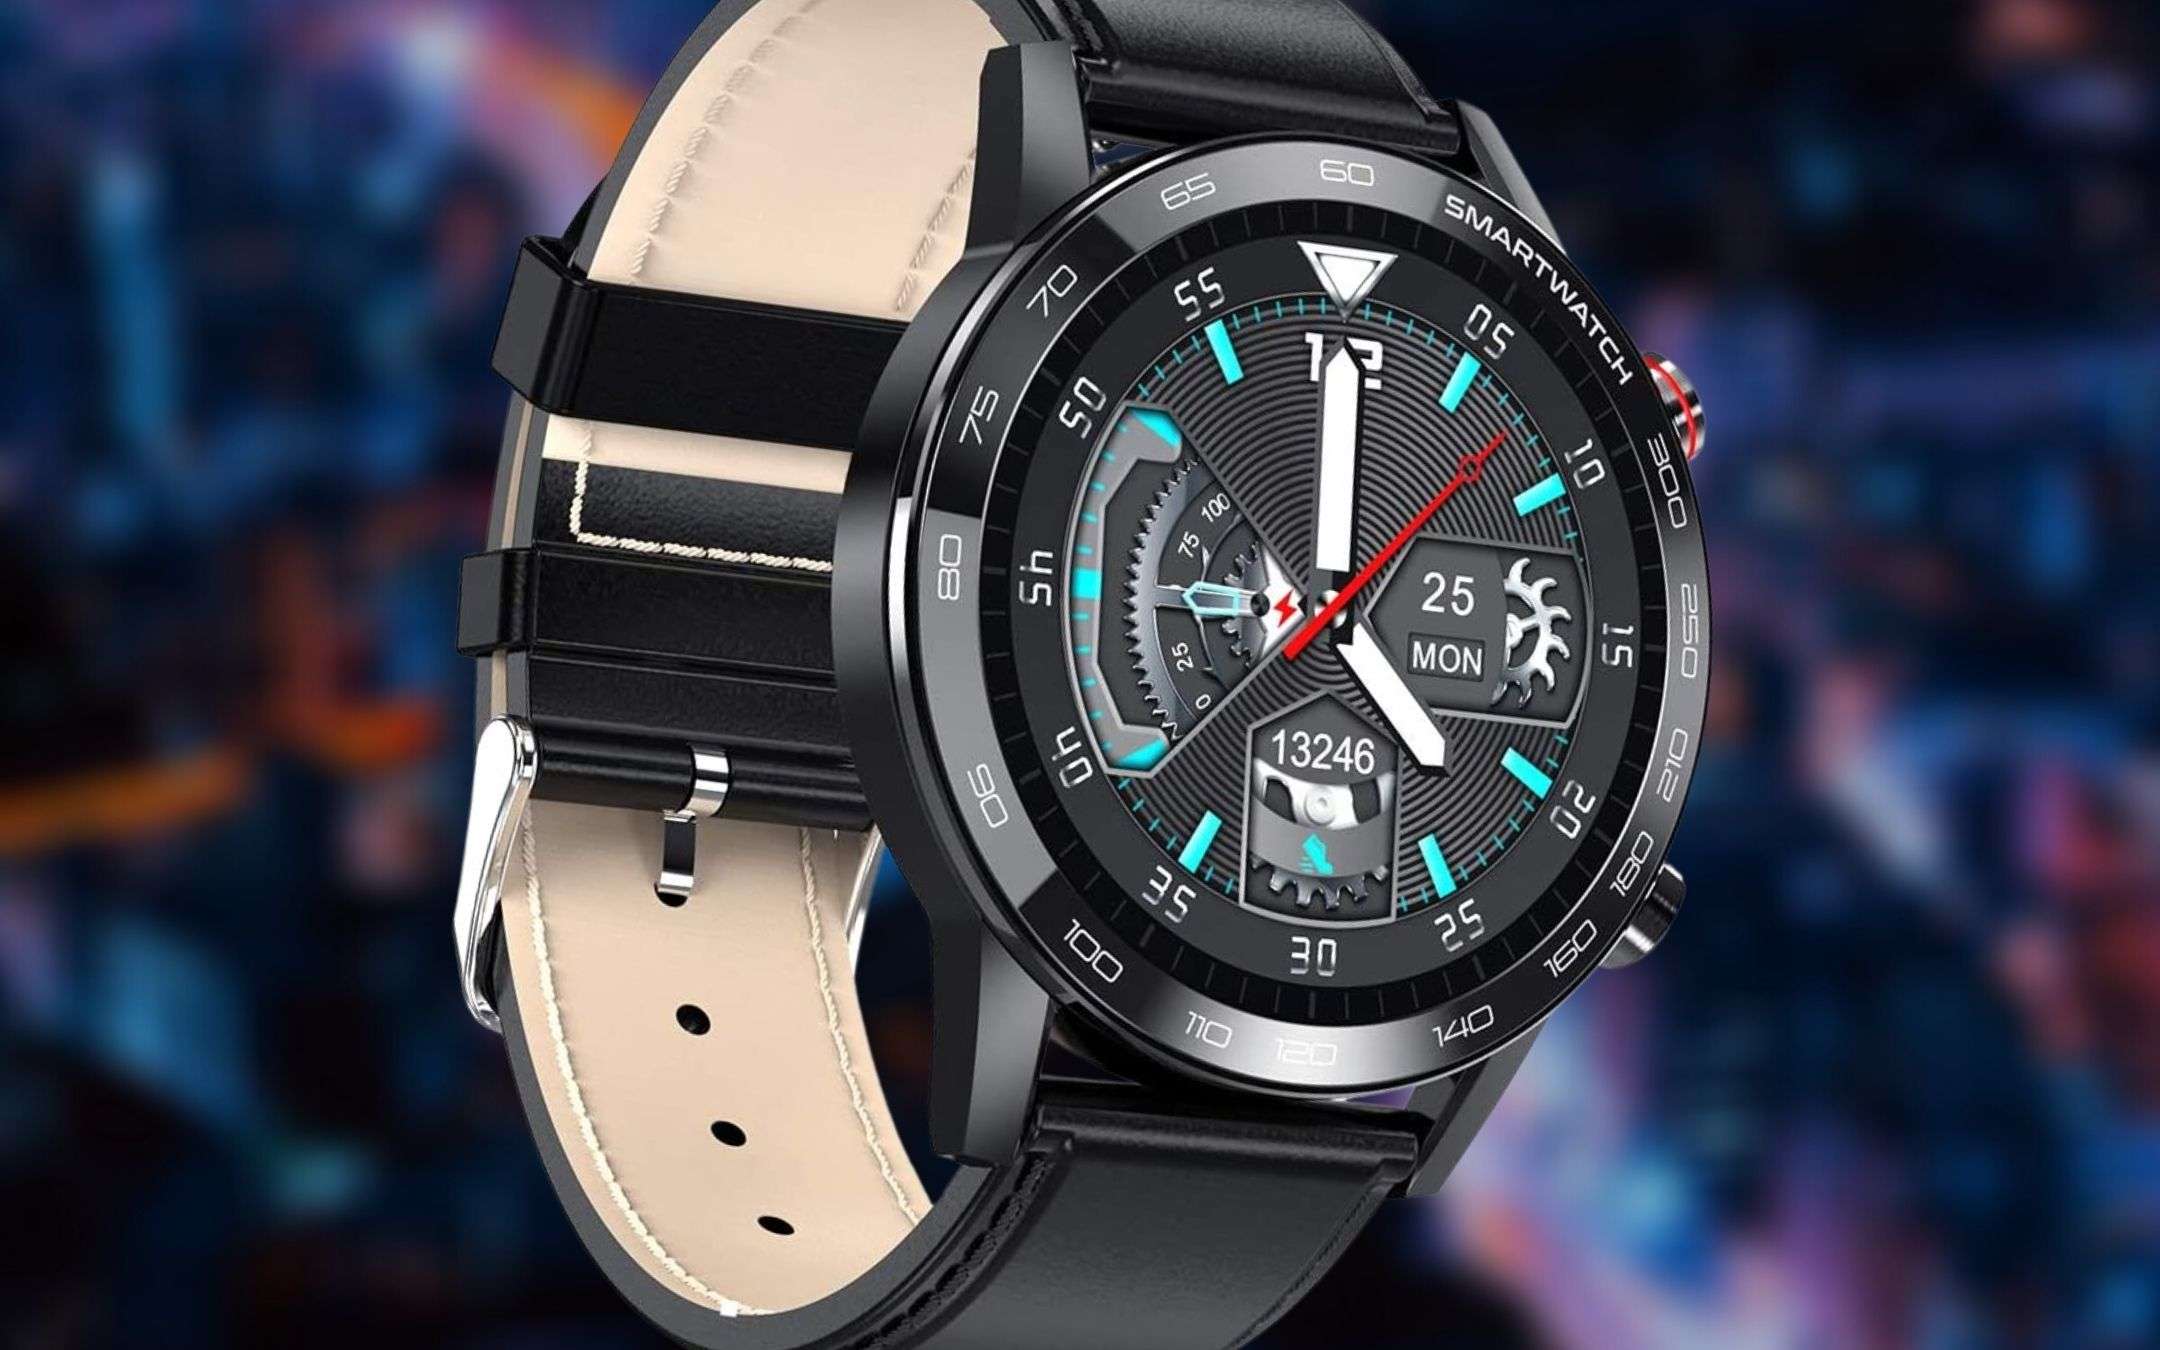 Elegante smartwatch di design, Amazon: prezzo WOW (45€)